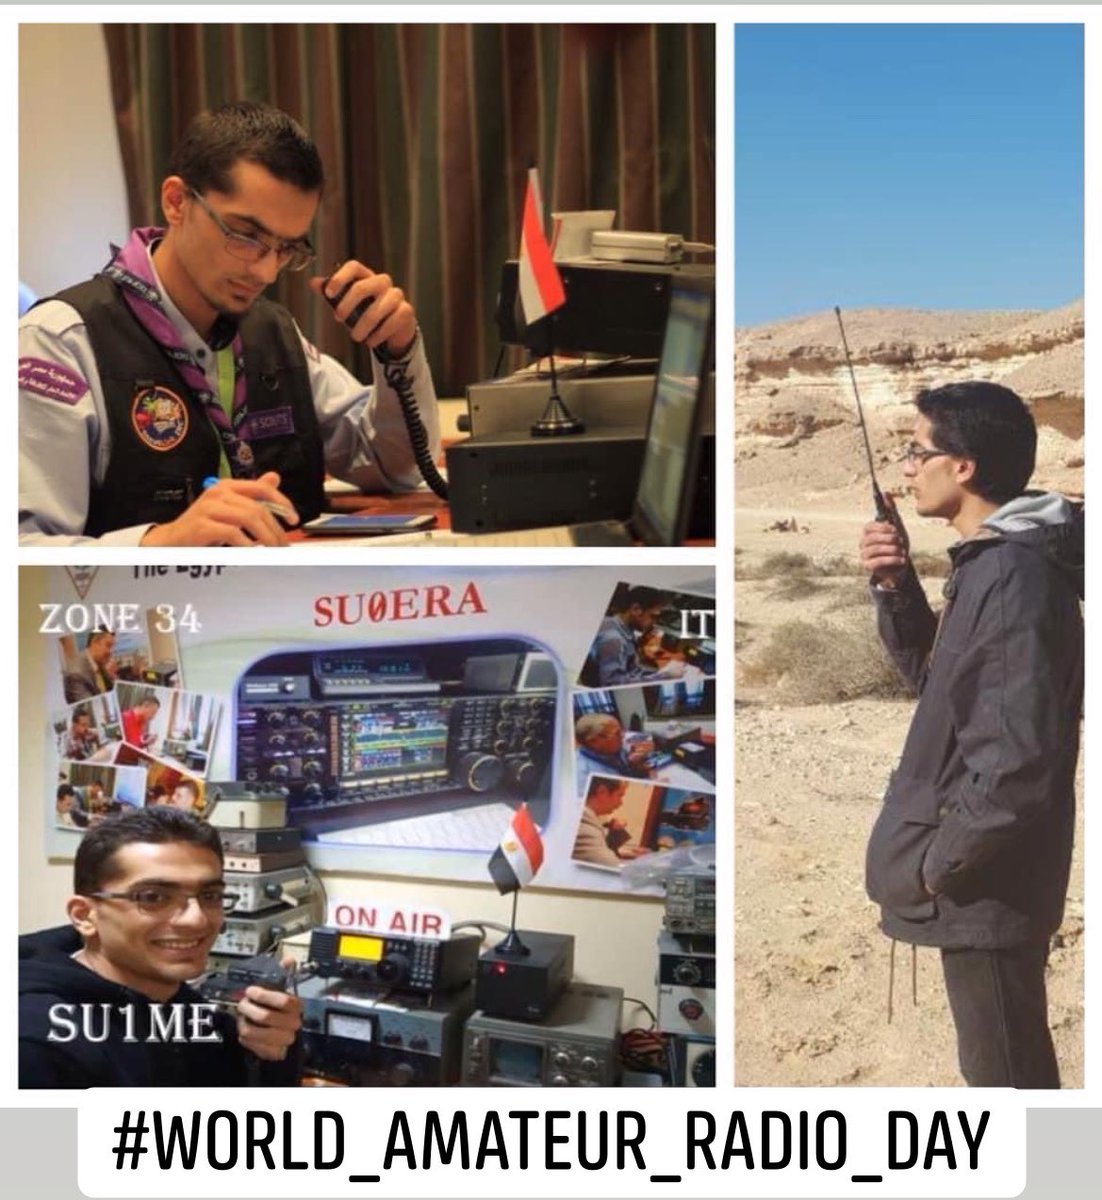 #18th_April 
#اليوم_العالمي_لهواة_الراديو
#اليوم_العالمي_لهواة_اللاسلكي
#World_Amateur_Radio_Day
#ssb #cw #CQ #qsl #hamradio #WARD #qrz
SU1ME🇪🇬